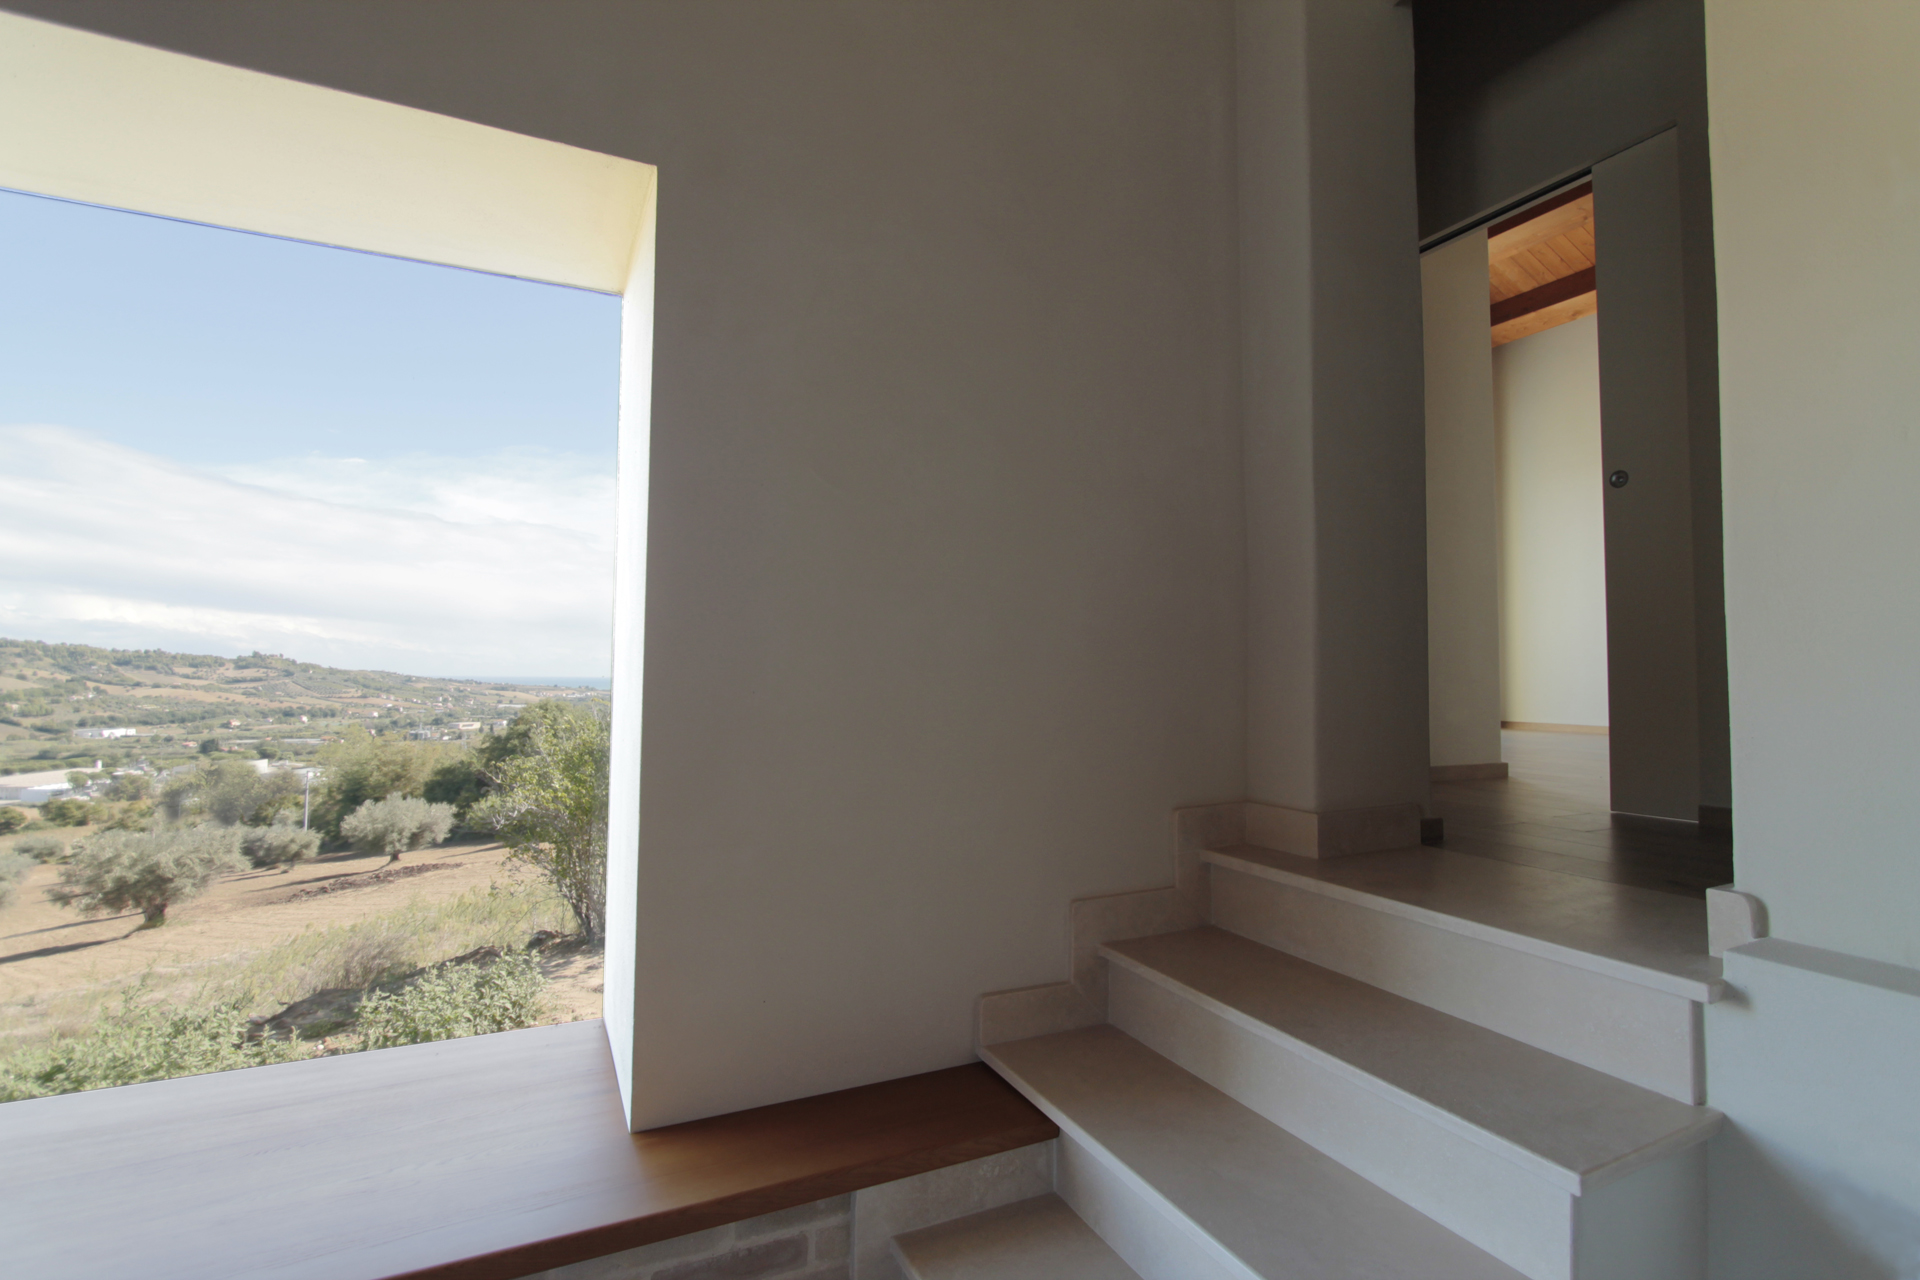 Casa di campagna - interno - finestra baywindow con seduta in legno e vista sul paesaggio collinare ed il mare adriatico